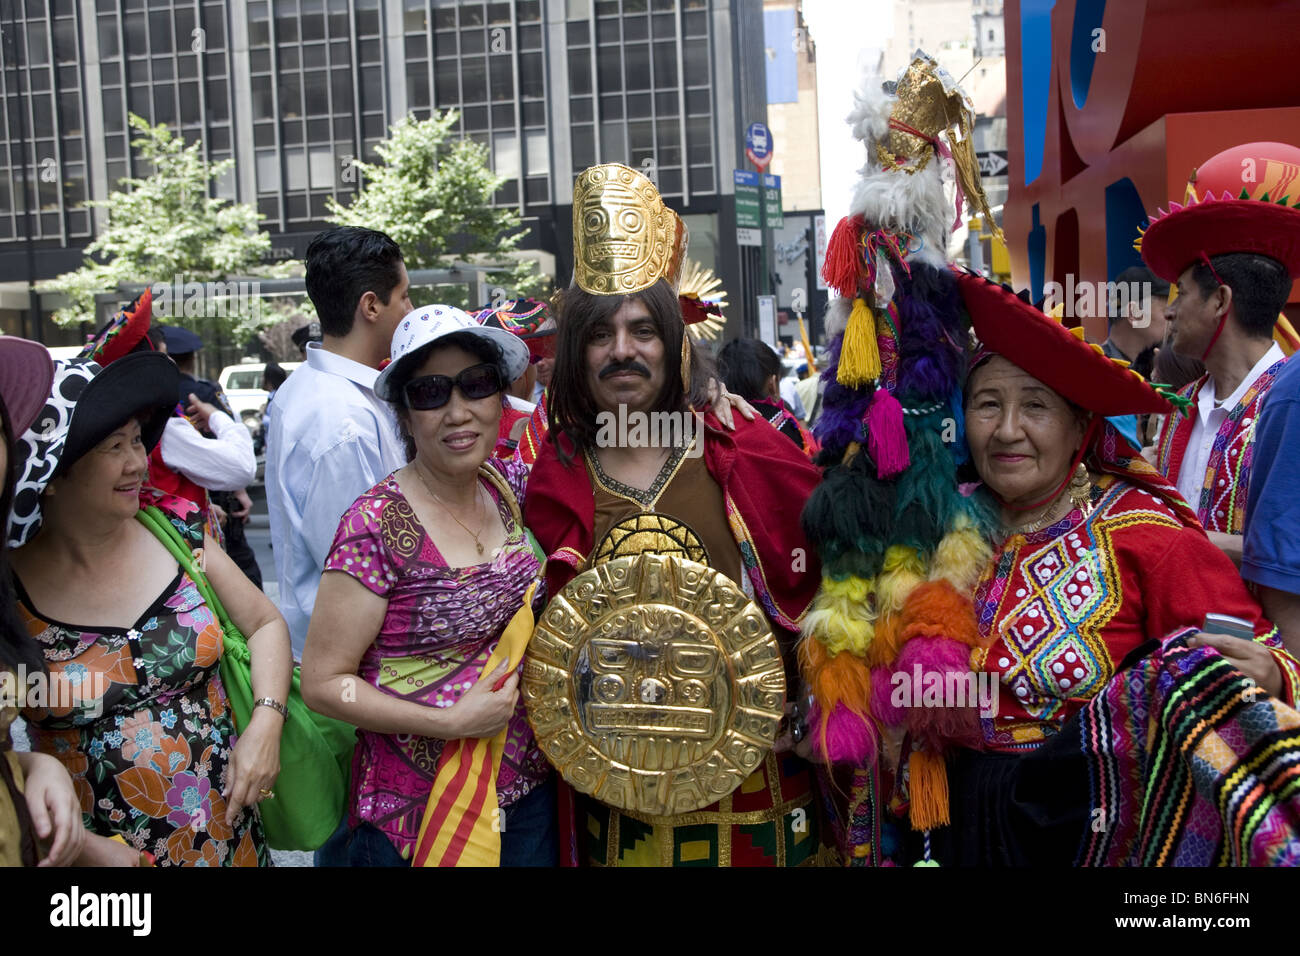 Les immigrants internationaux Parade, NEW YORK : Portrait of Peruvian (R) et vietnamiens (L) immigrants sur Avenue à New York. Banque D'Images